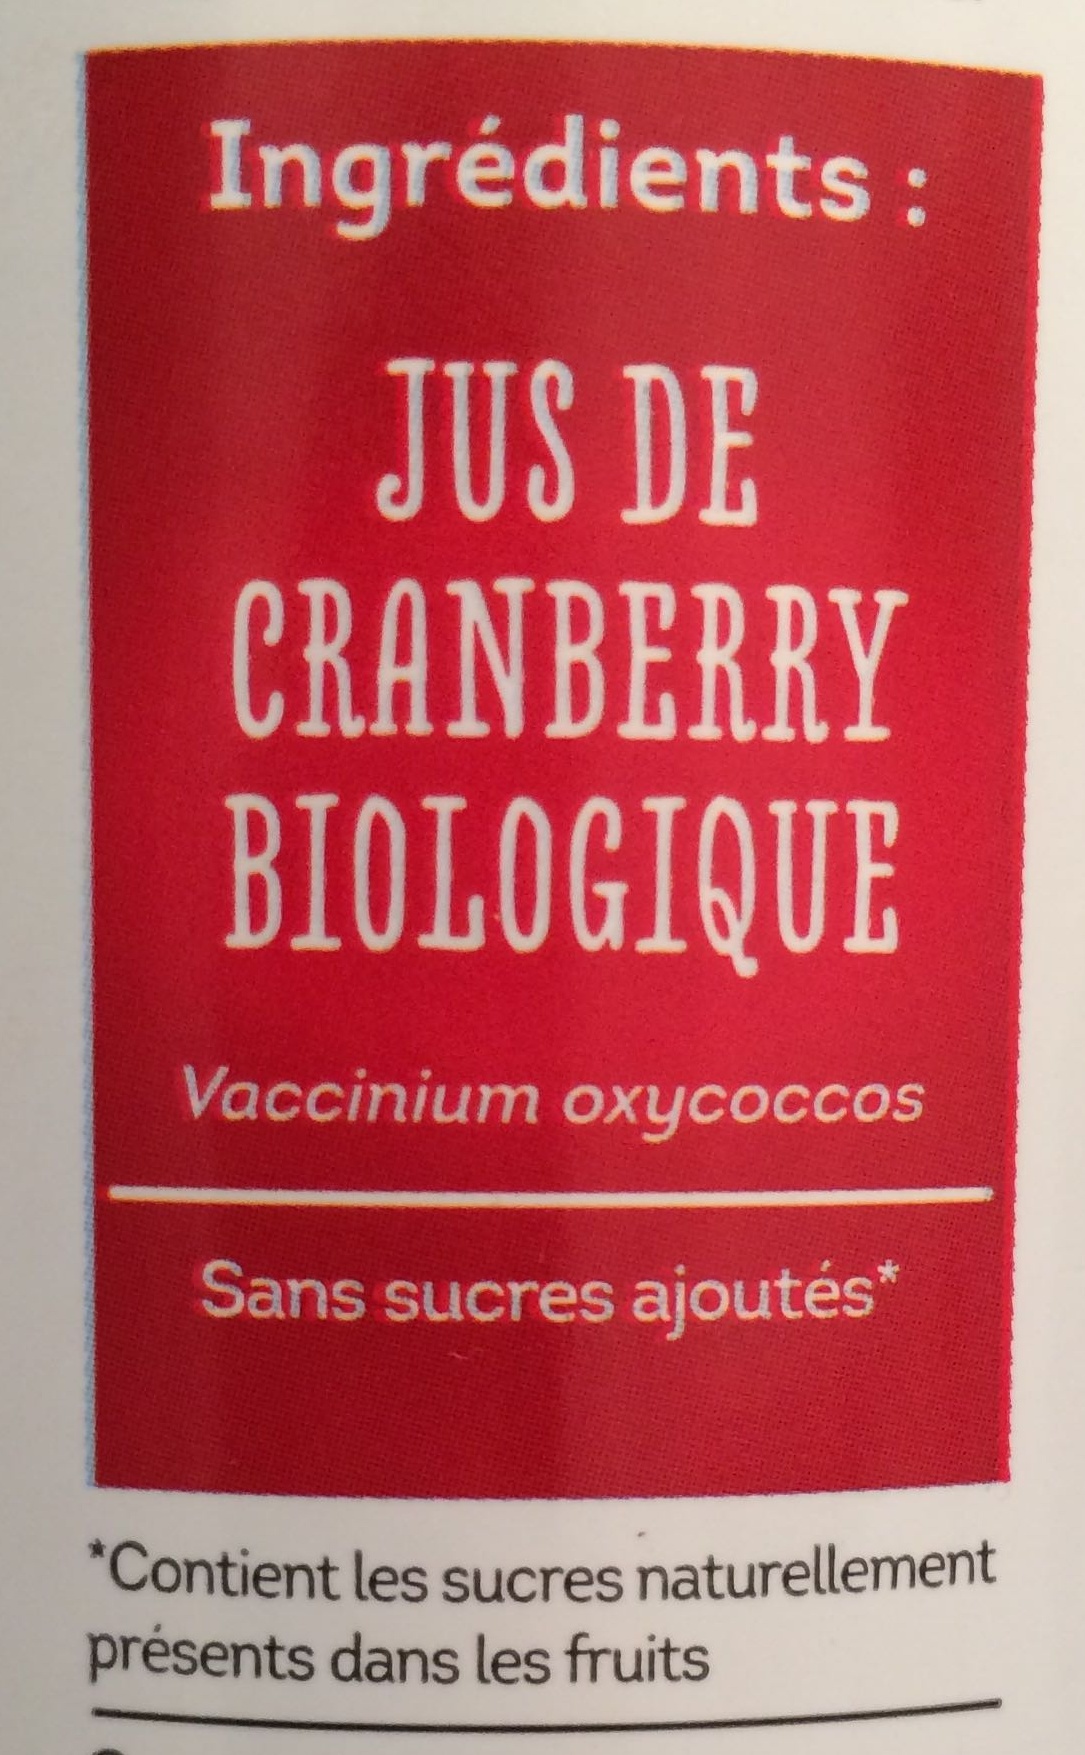 100 PUR JUS de cranberry - Ingredients - fr